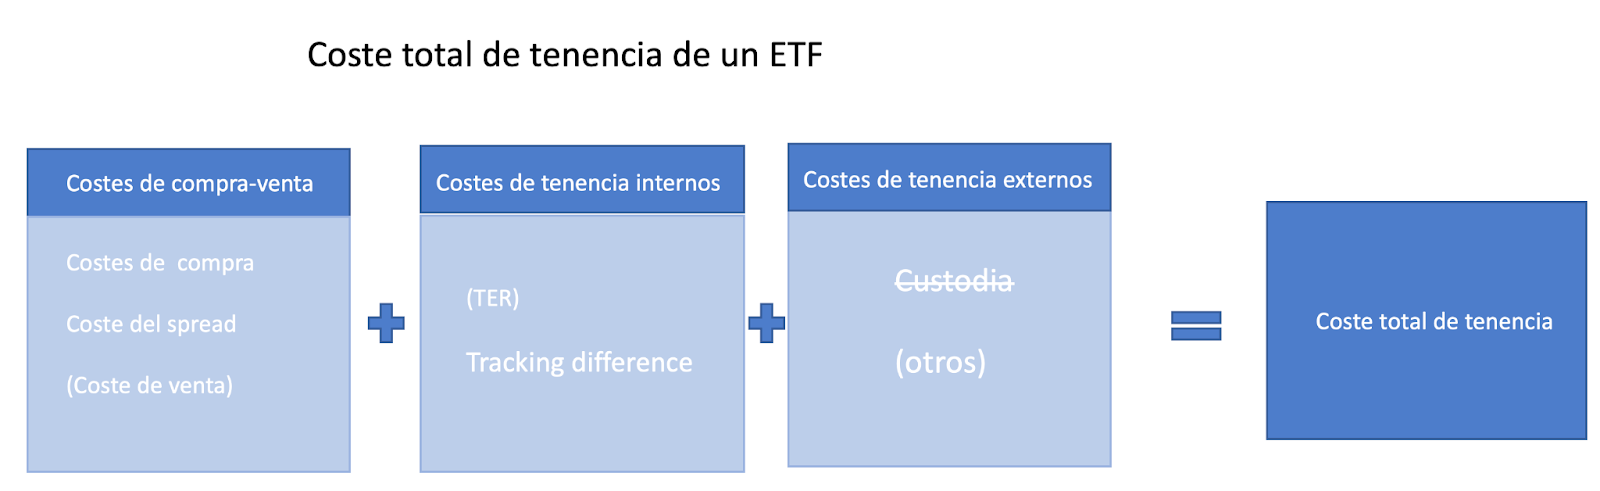 coste de un ETF total